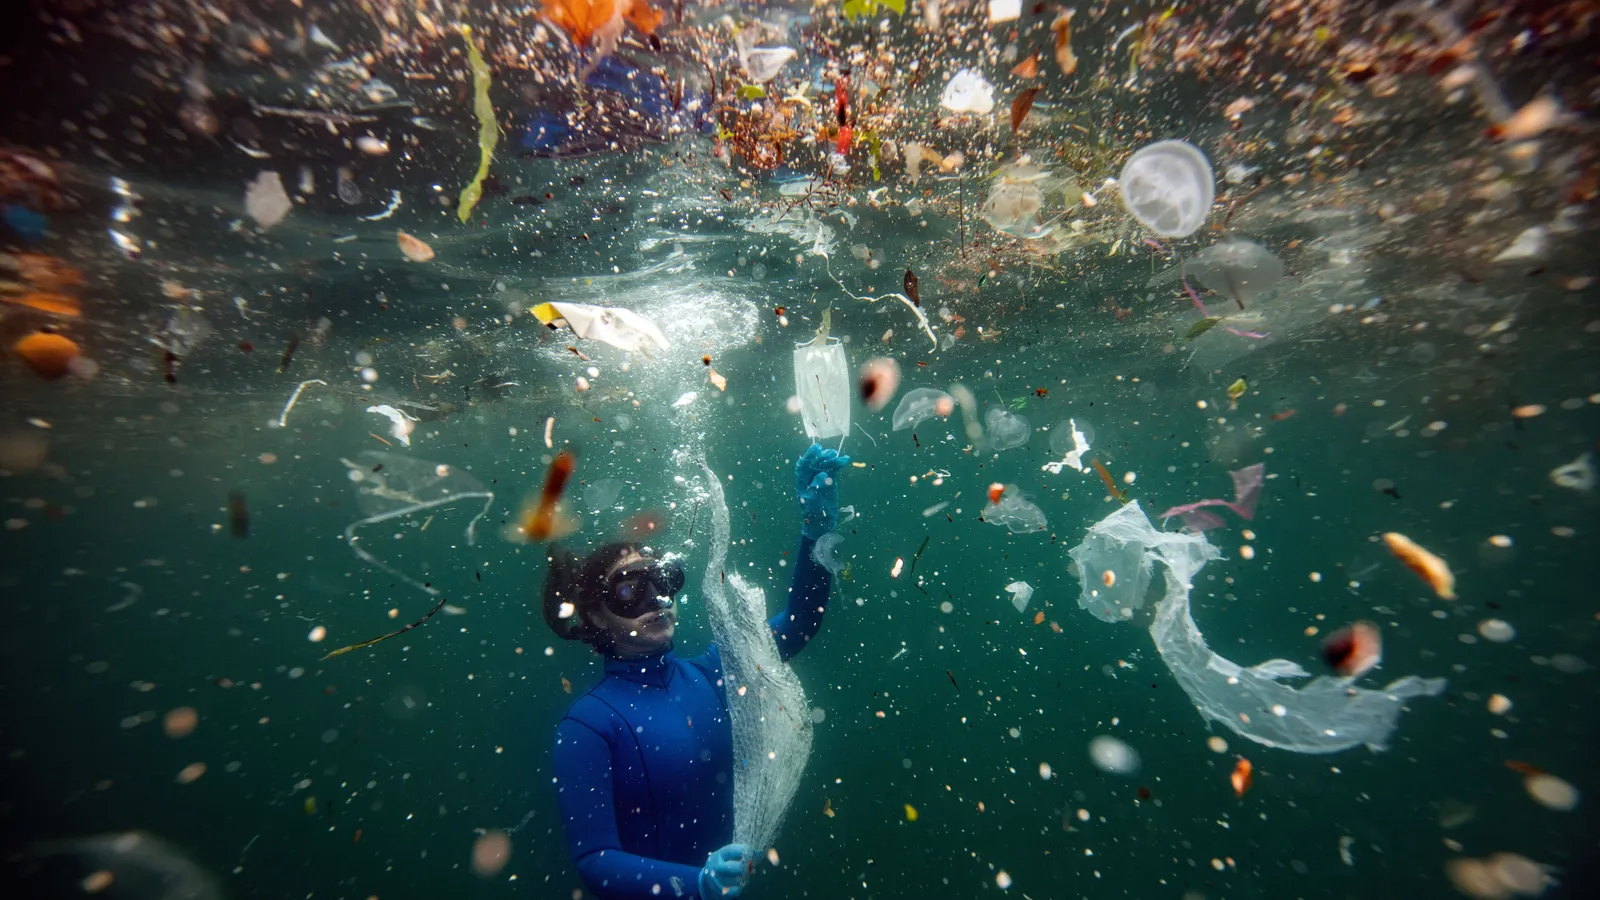 Para 2050, los ecosistemas marinos tendrán más plástico que peces; sí hay una solución si los países actúan ahora